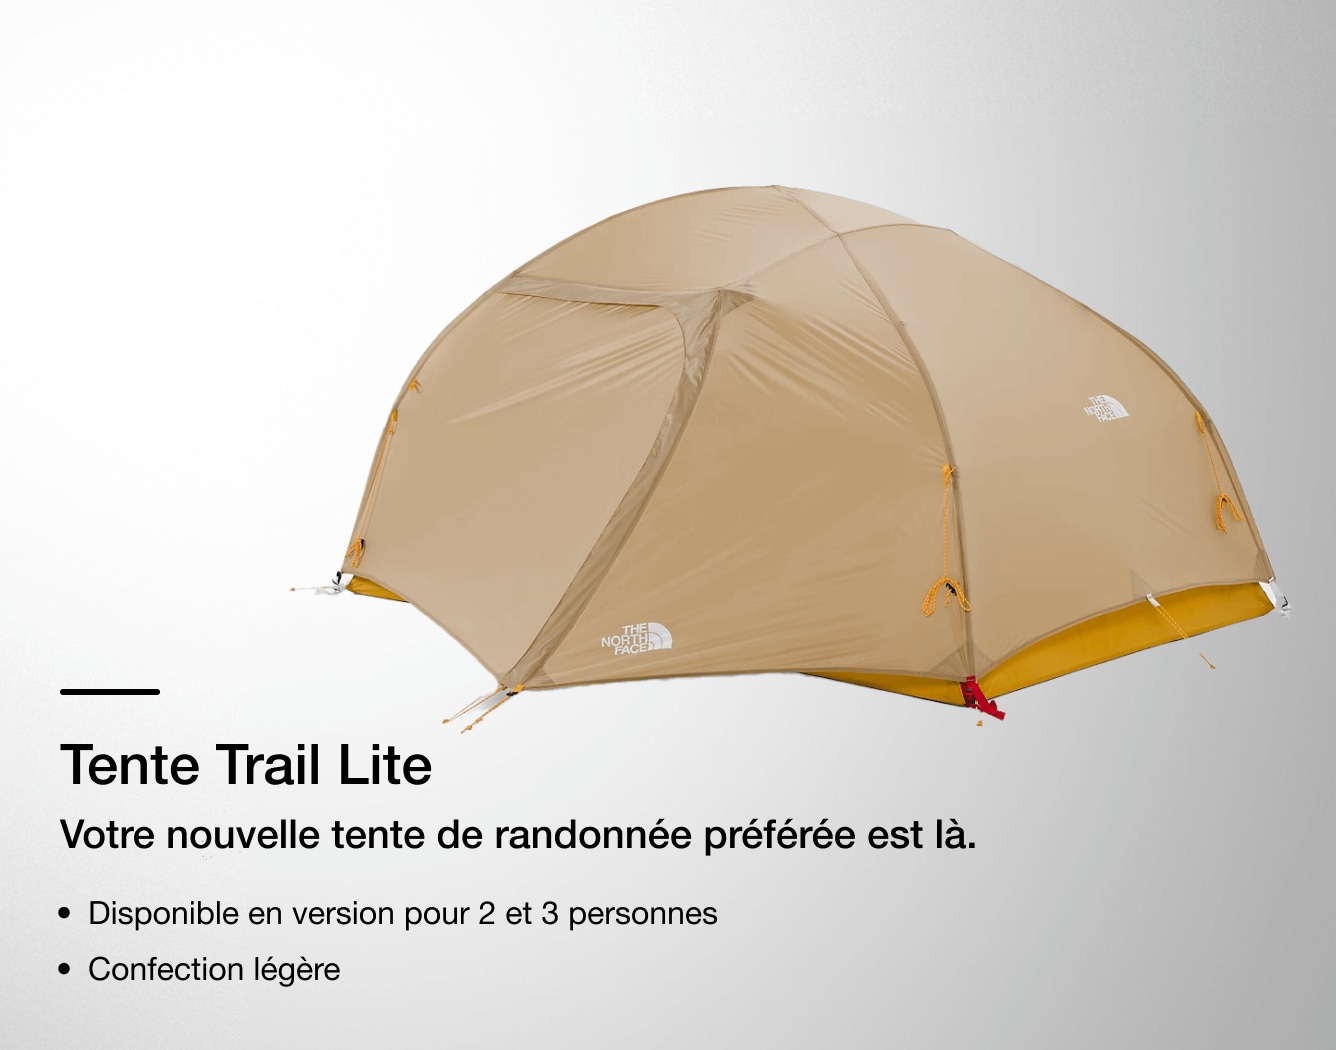 Image de la tente Trail Lite de The North Face avec les caractéristiques indiquées en surimpression. 